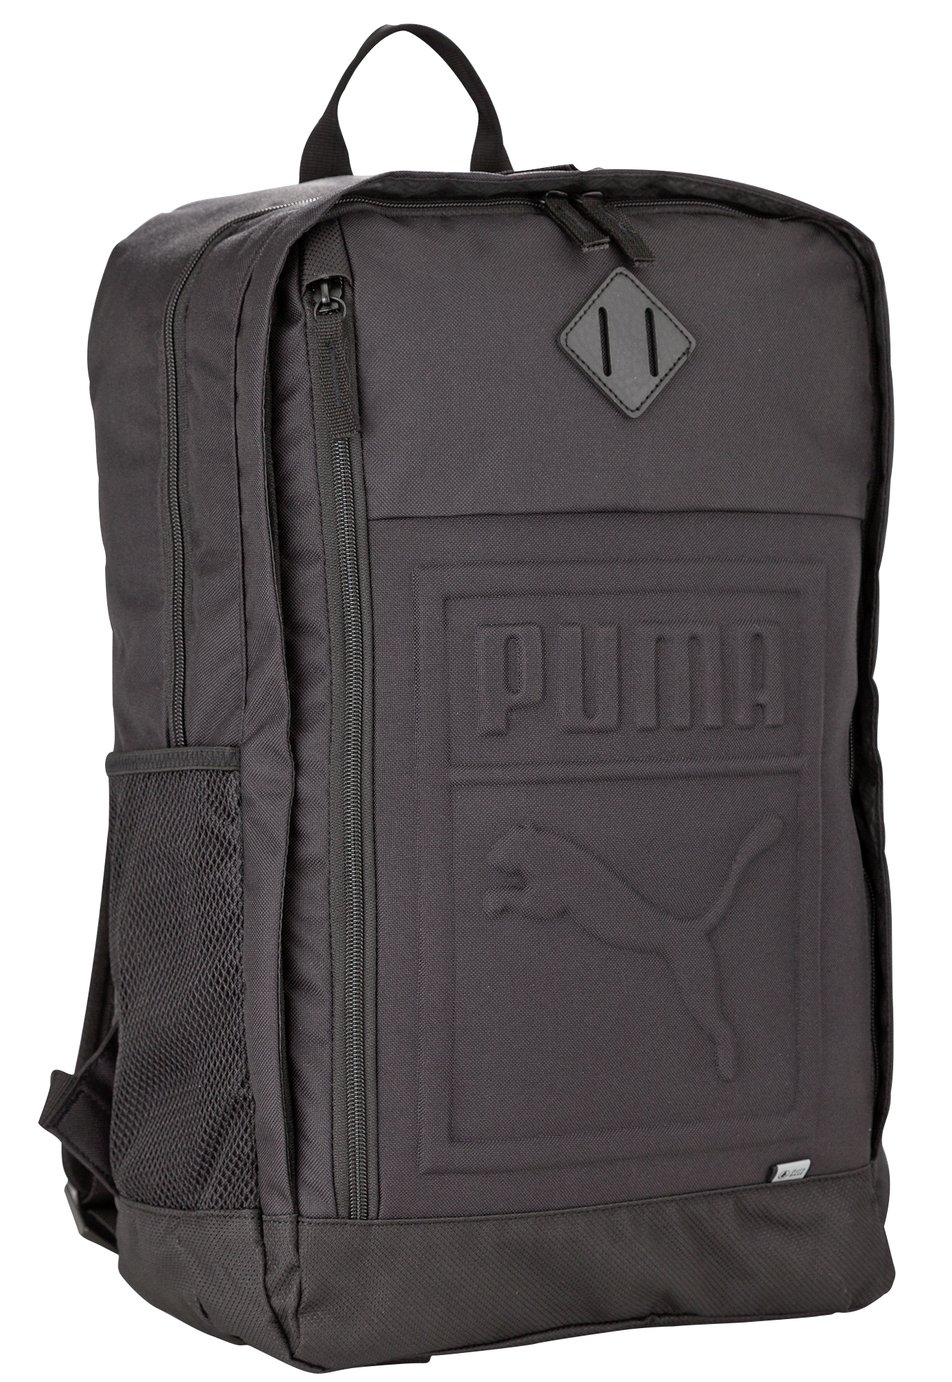 puma bags backpacks